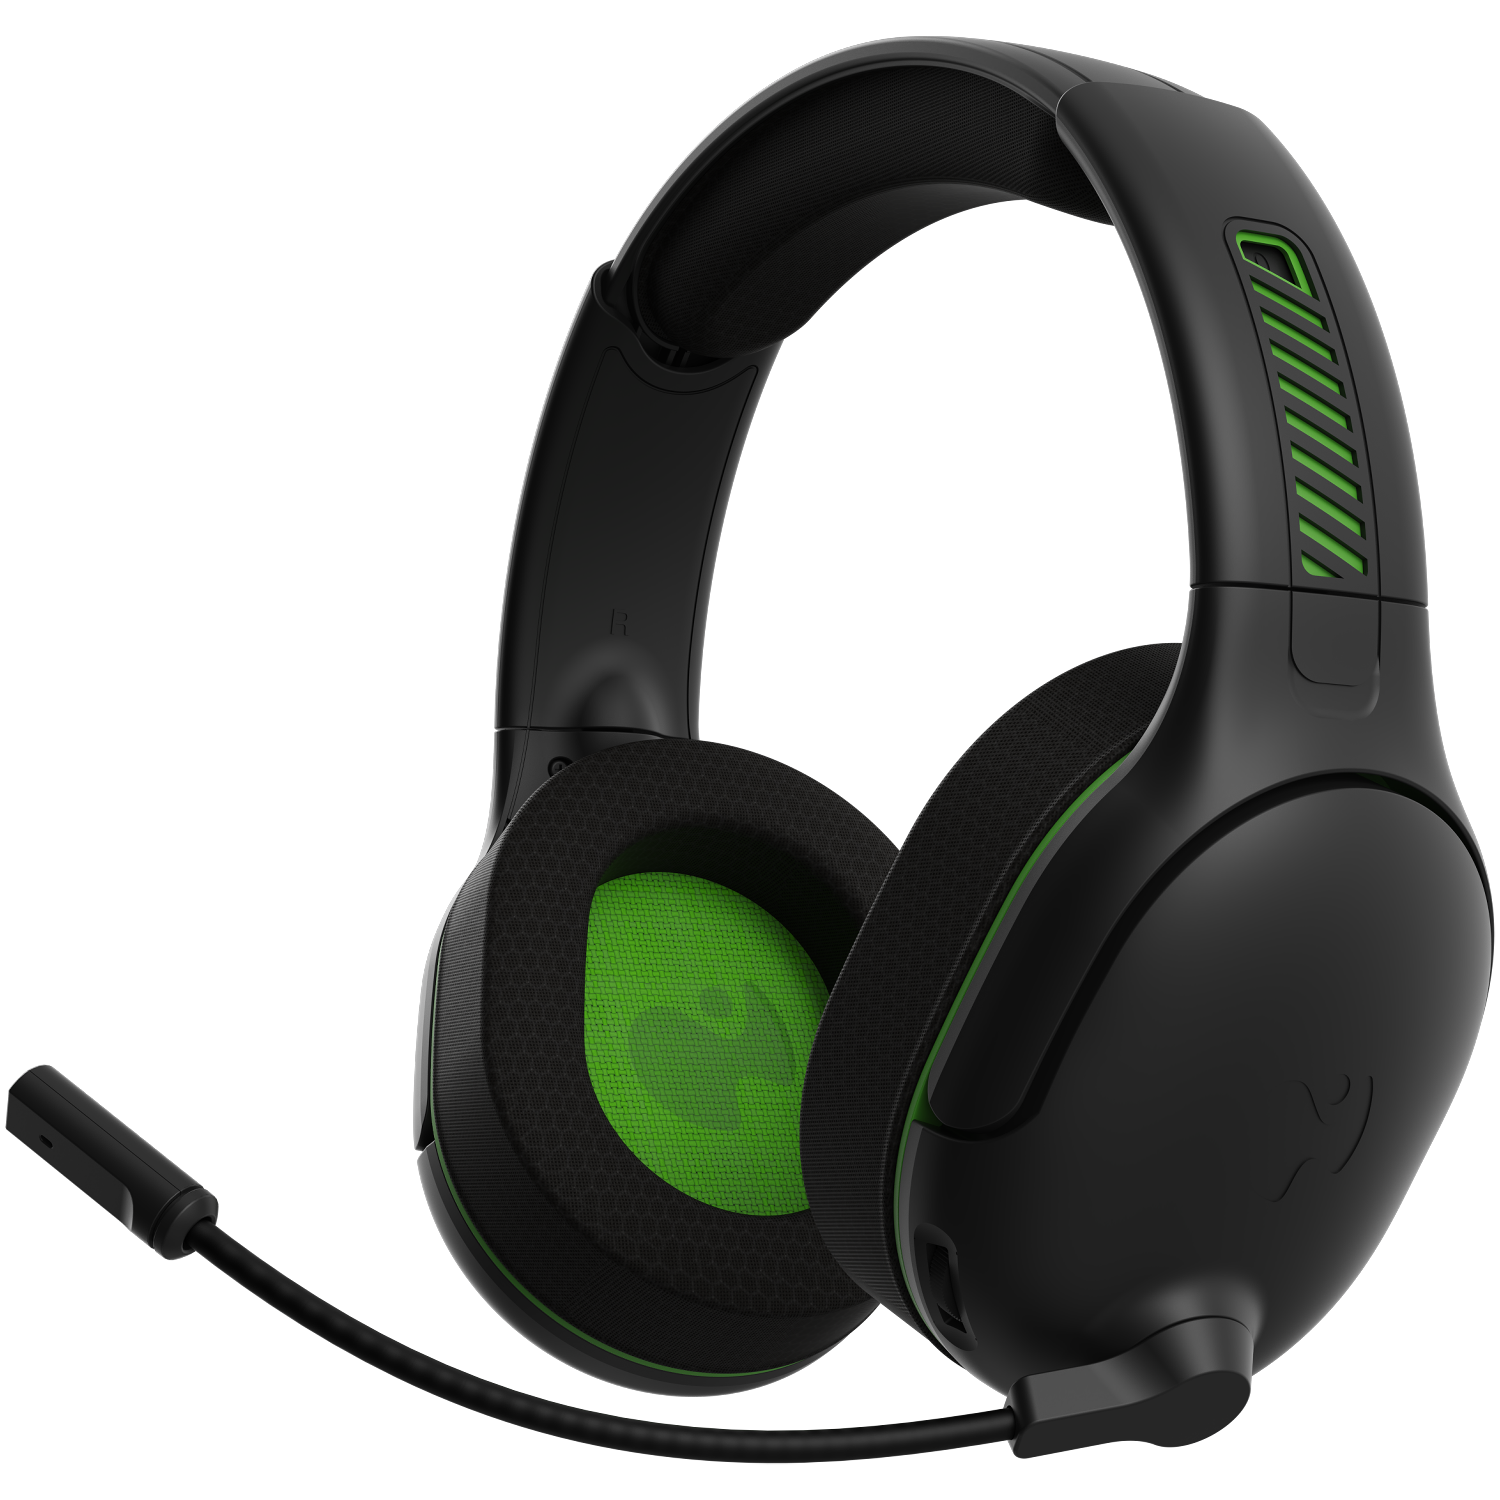  Xbox Wireless Headset – Xbox Series X